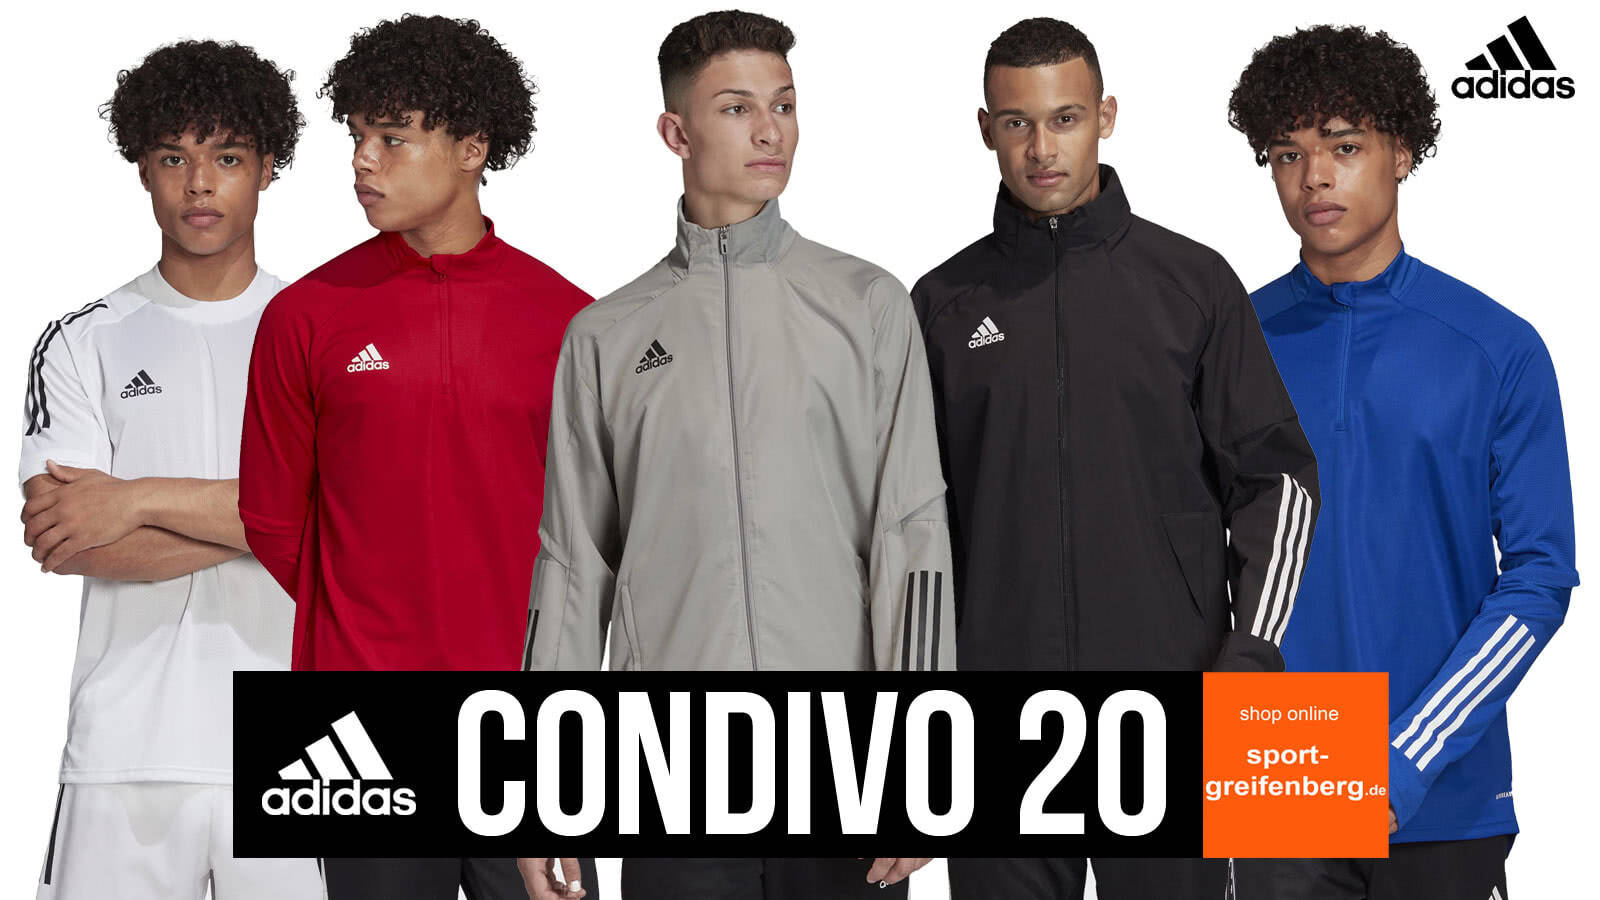 Die adidas Condivo 20 Sportbekleidung mit Anzug, Jersey, Trainingsjacke uvm.